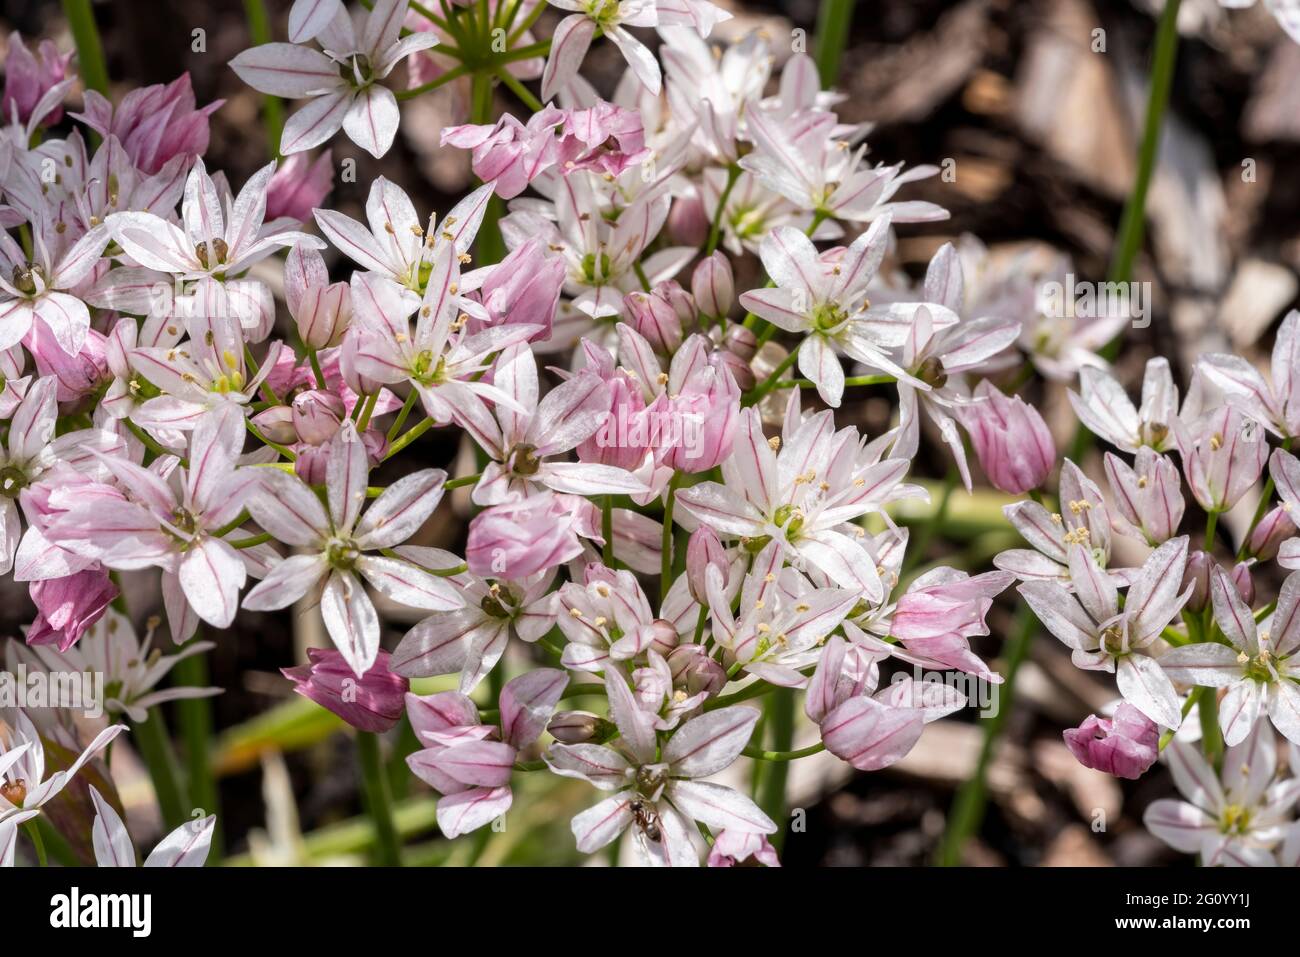 Allium 'Cameleon' una pianta bulbosa fiorita all'inizio dell'estate con un fiore bianco rosa estivo comunemente noto come una cipolla ornamentale, foto d'inventario Foto Stock